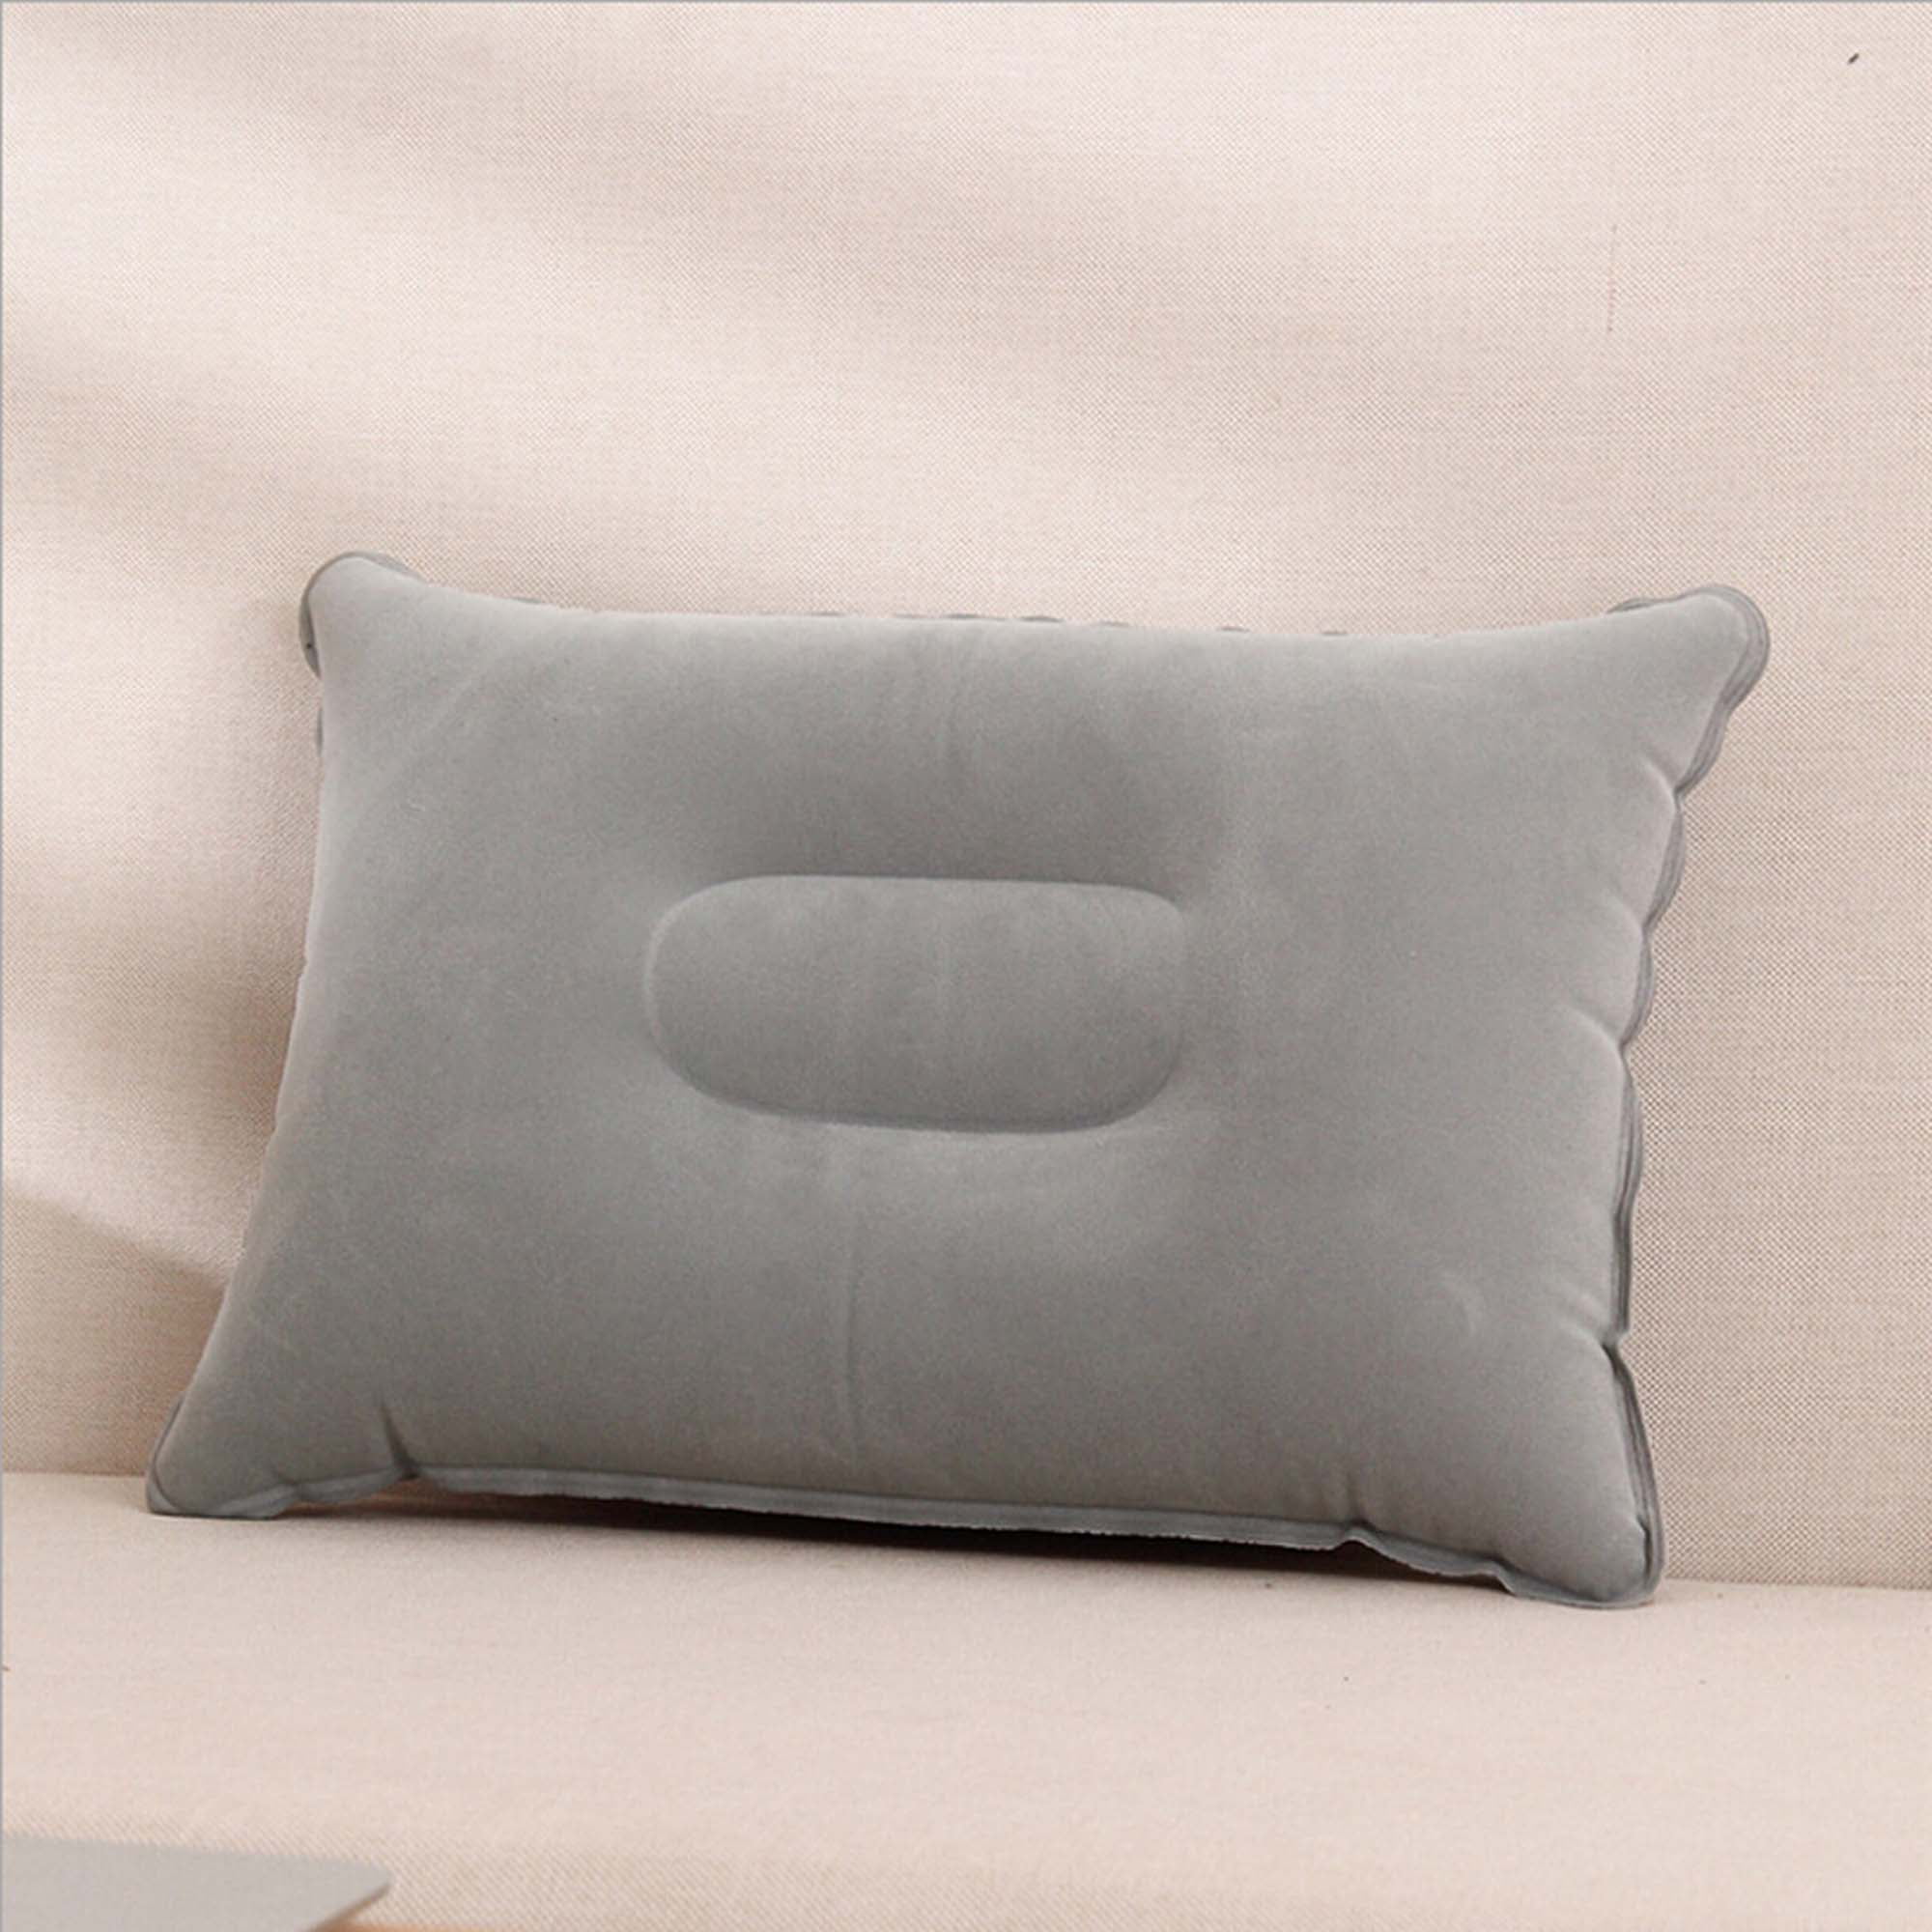 KAWACHI Inflatable Lumbar Pillow Lightweight Portable Travel